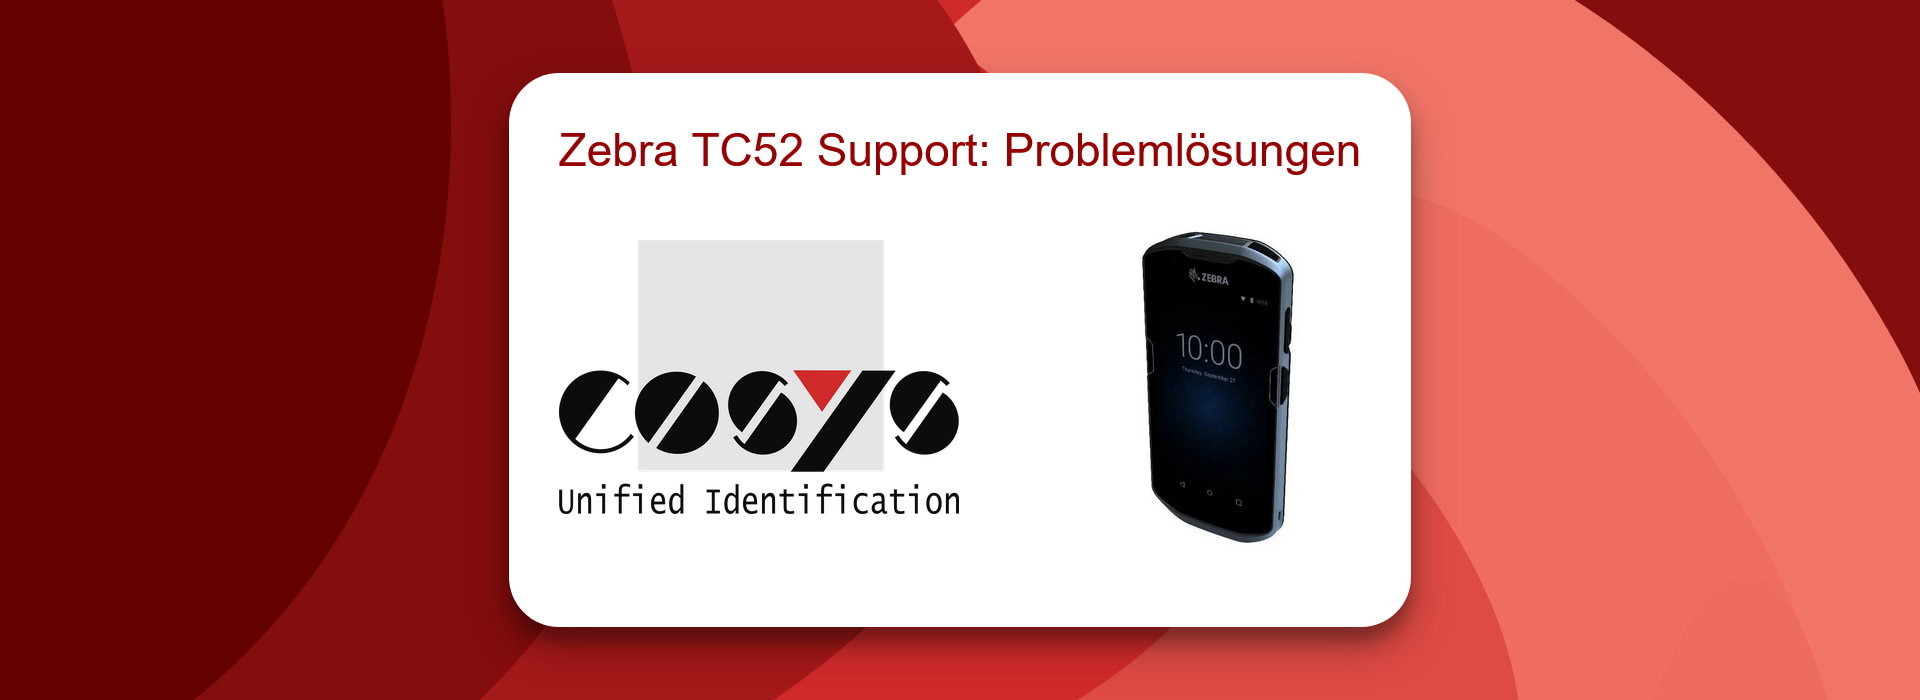 Zebra TC52 Support: Problemlösungen